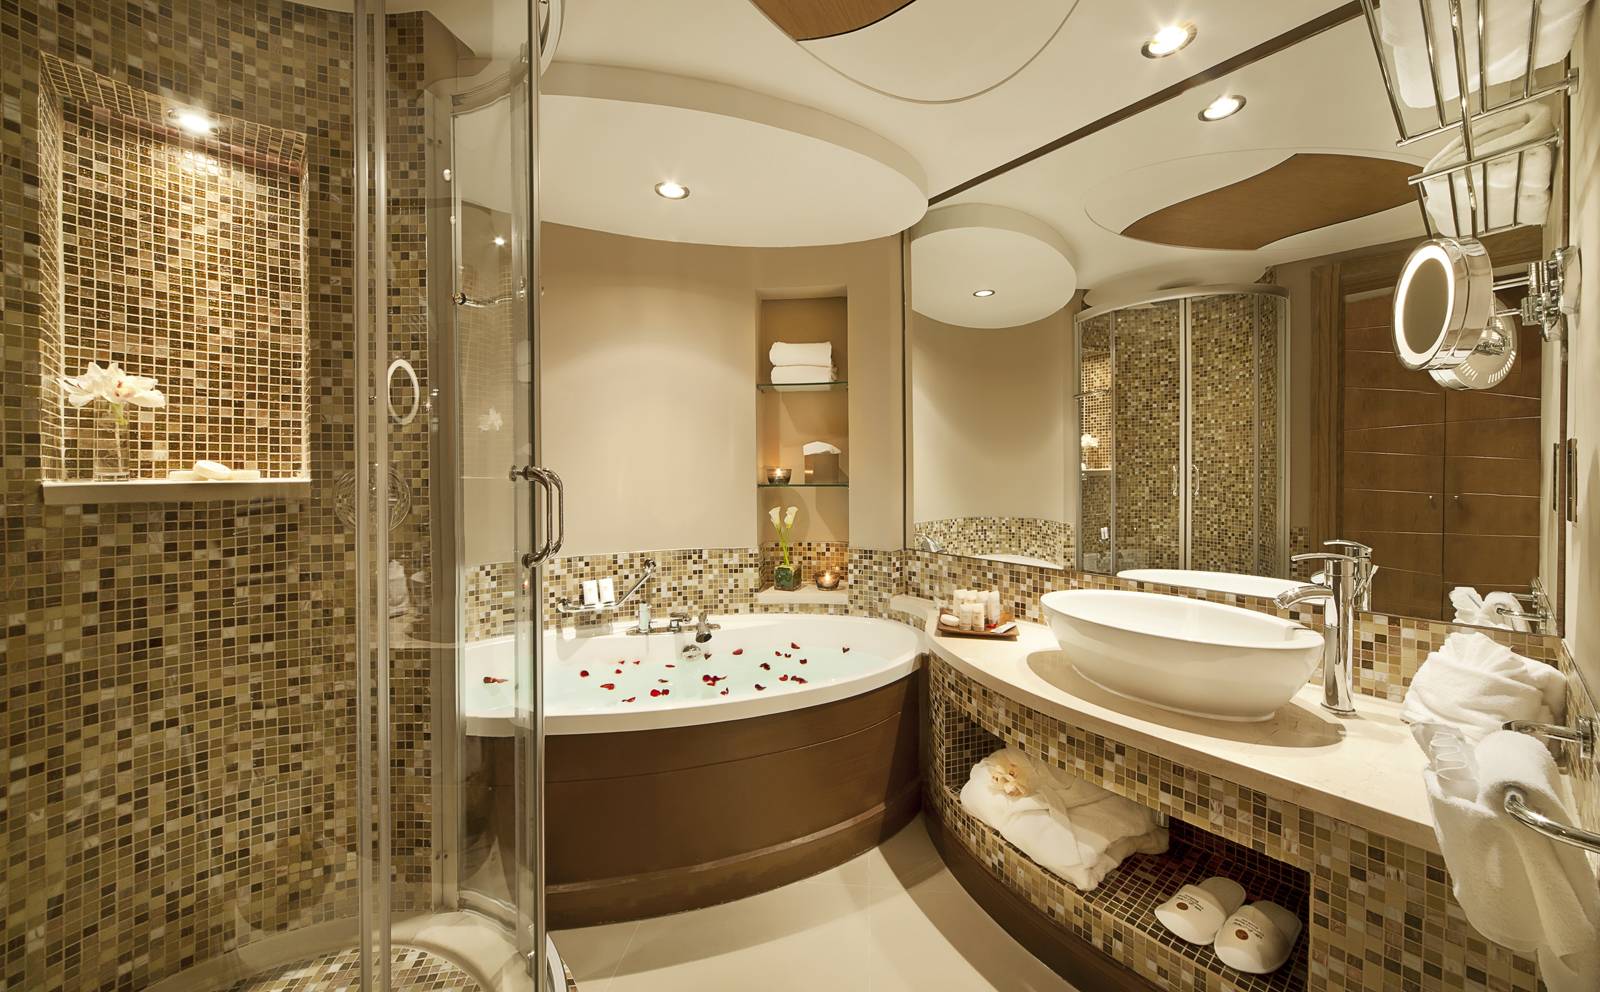 Gợi ý 10 phong cách thiết kế phòng tắm đẹp, thịnh hành nhất hiện nay